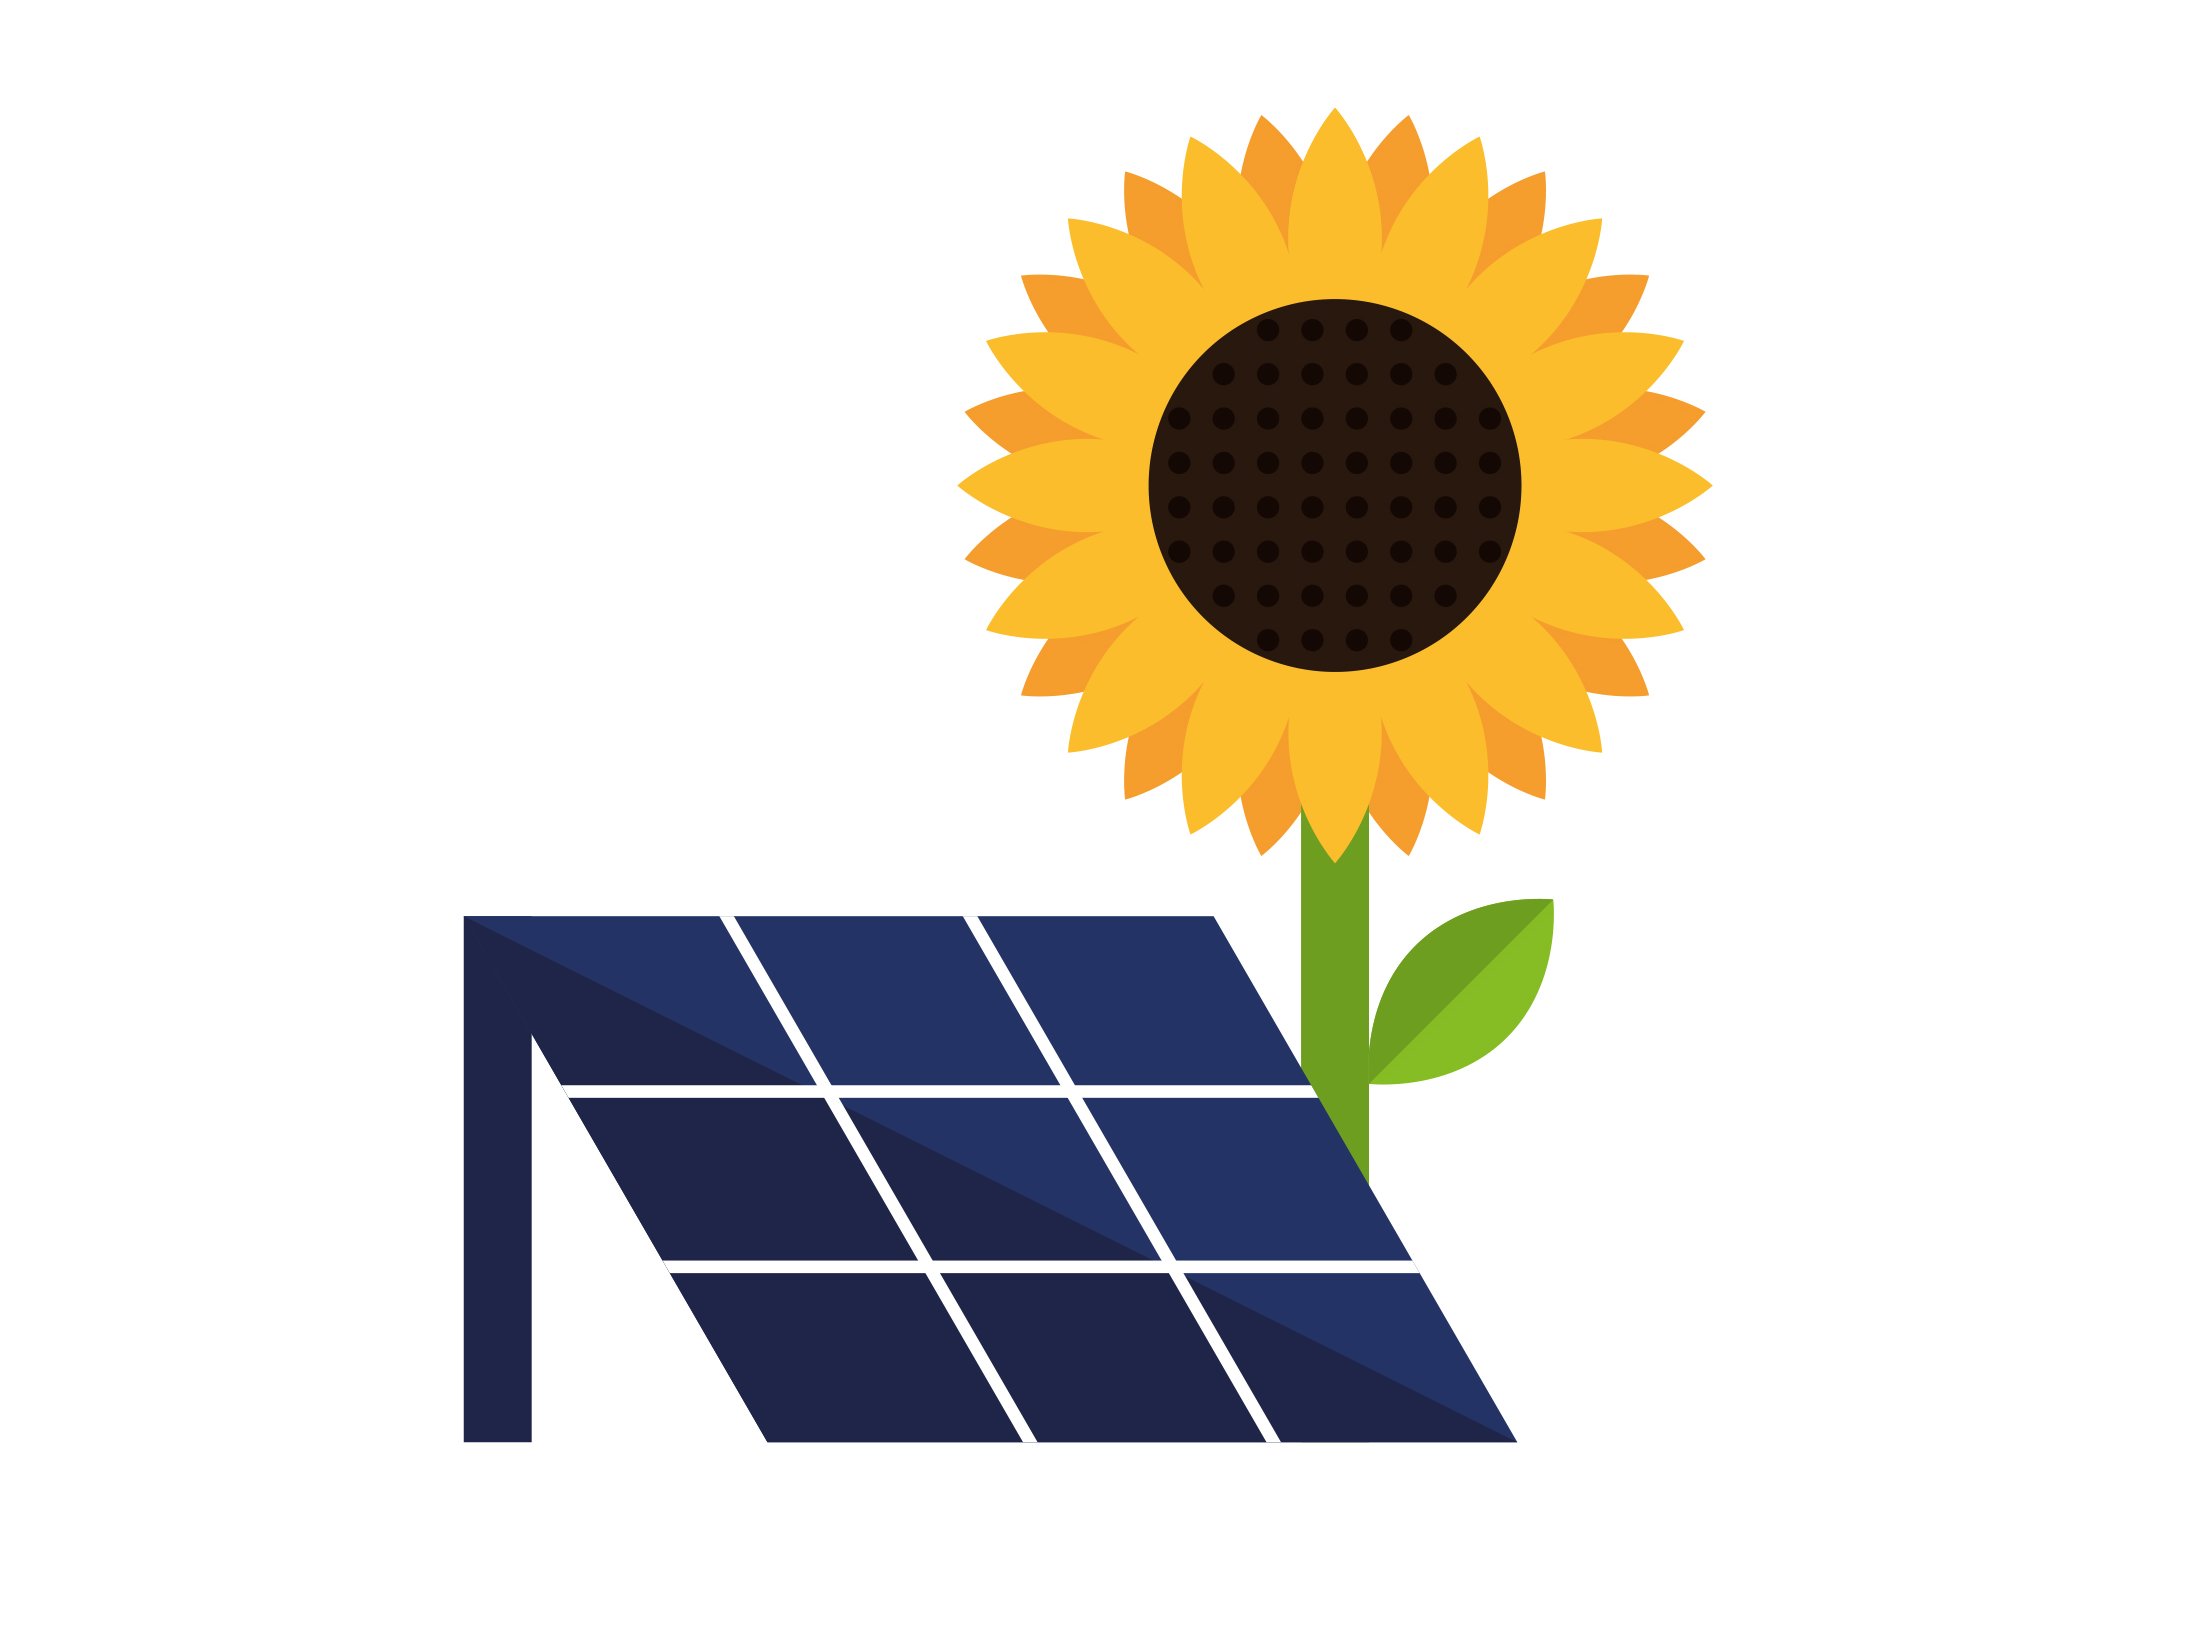 Solarsymbol mit Sonnenblume und Solardachpaneel